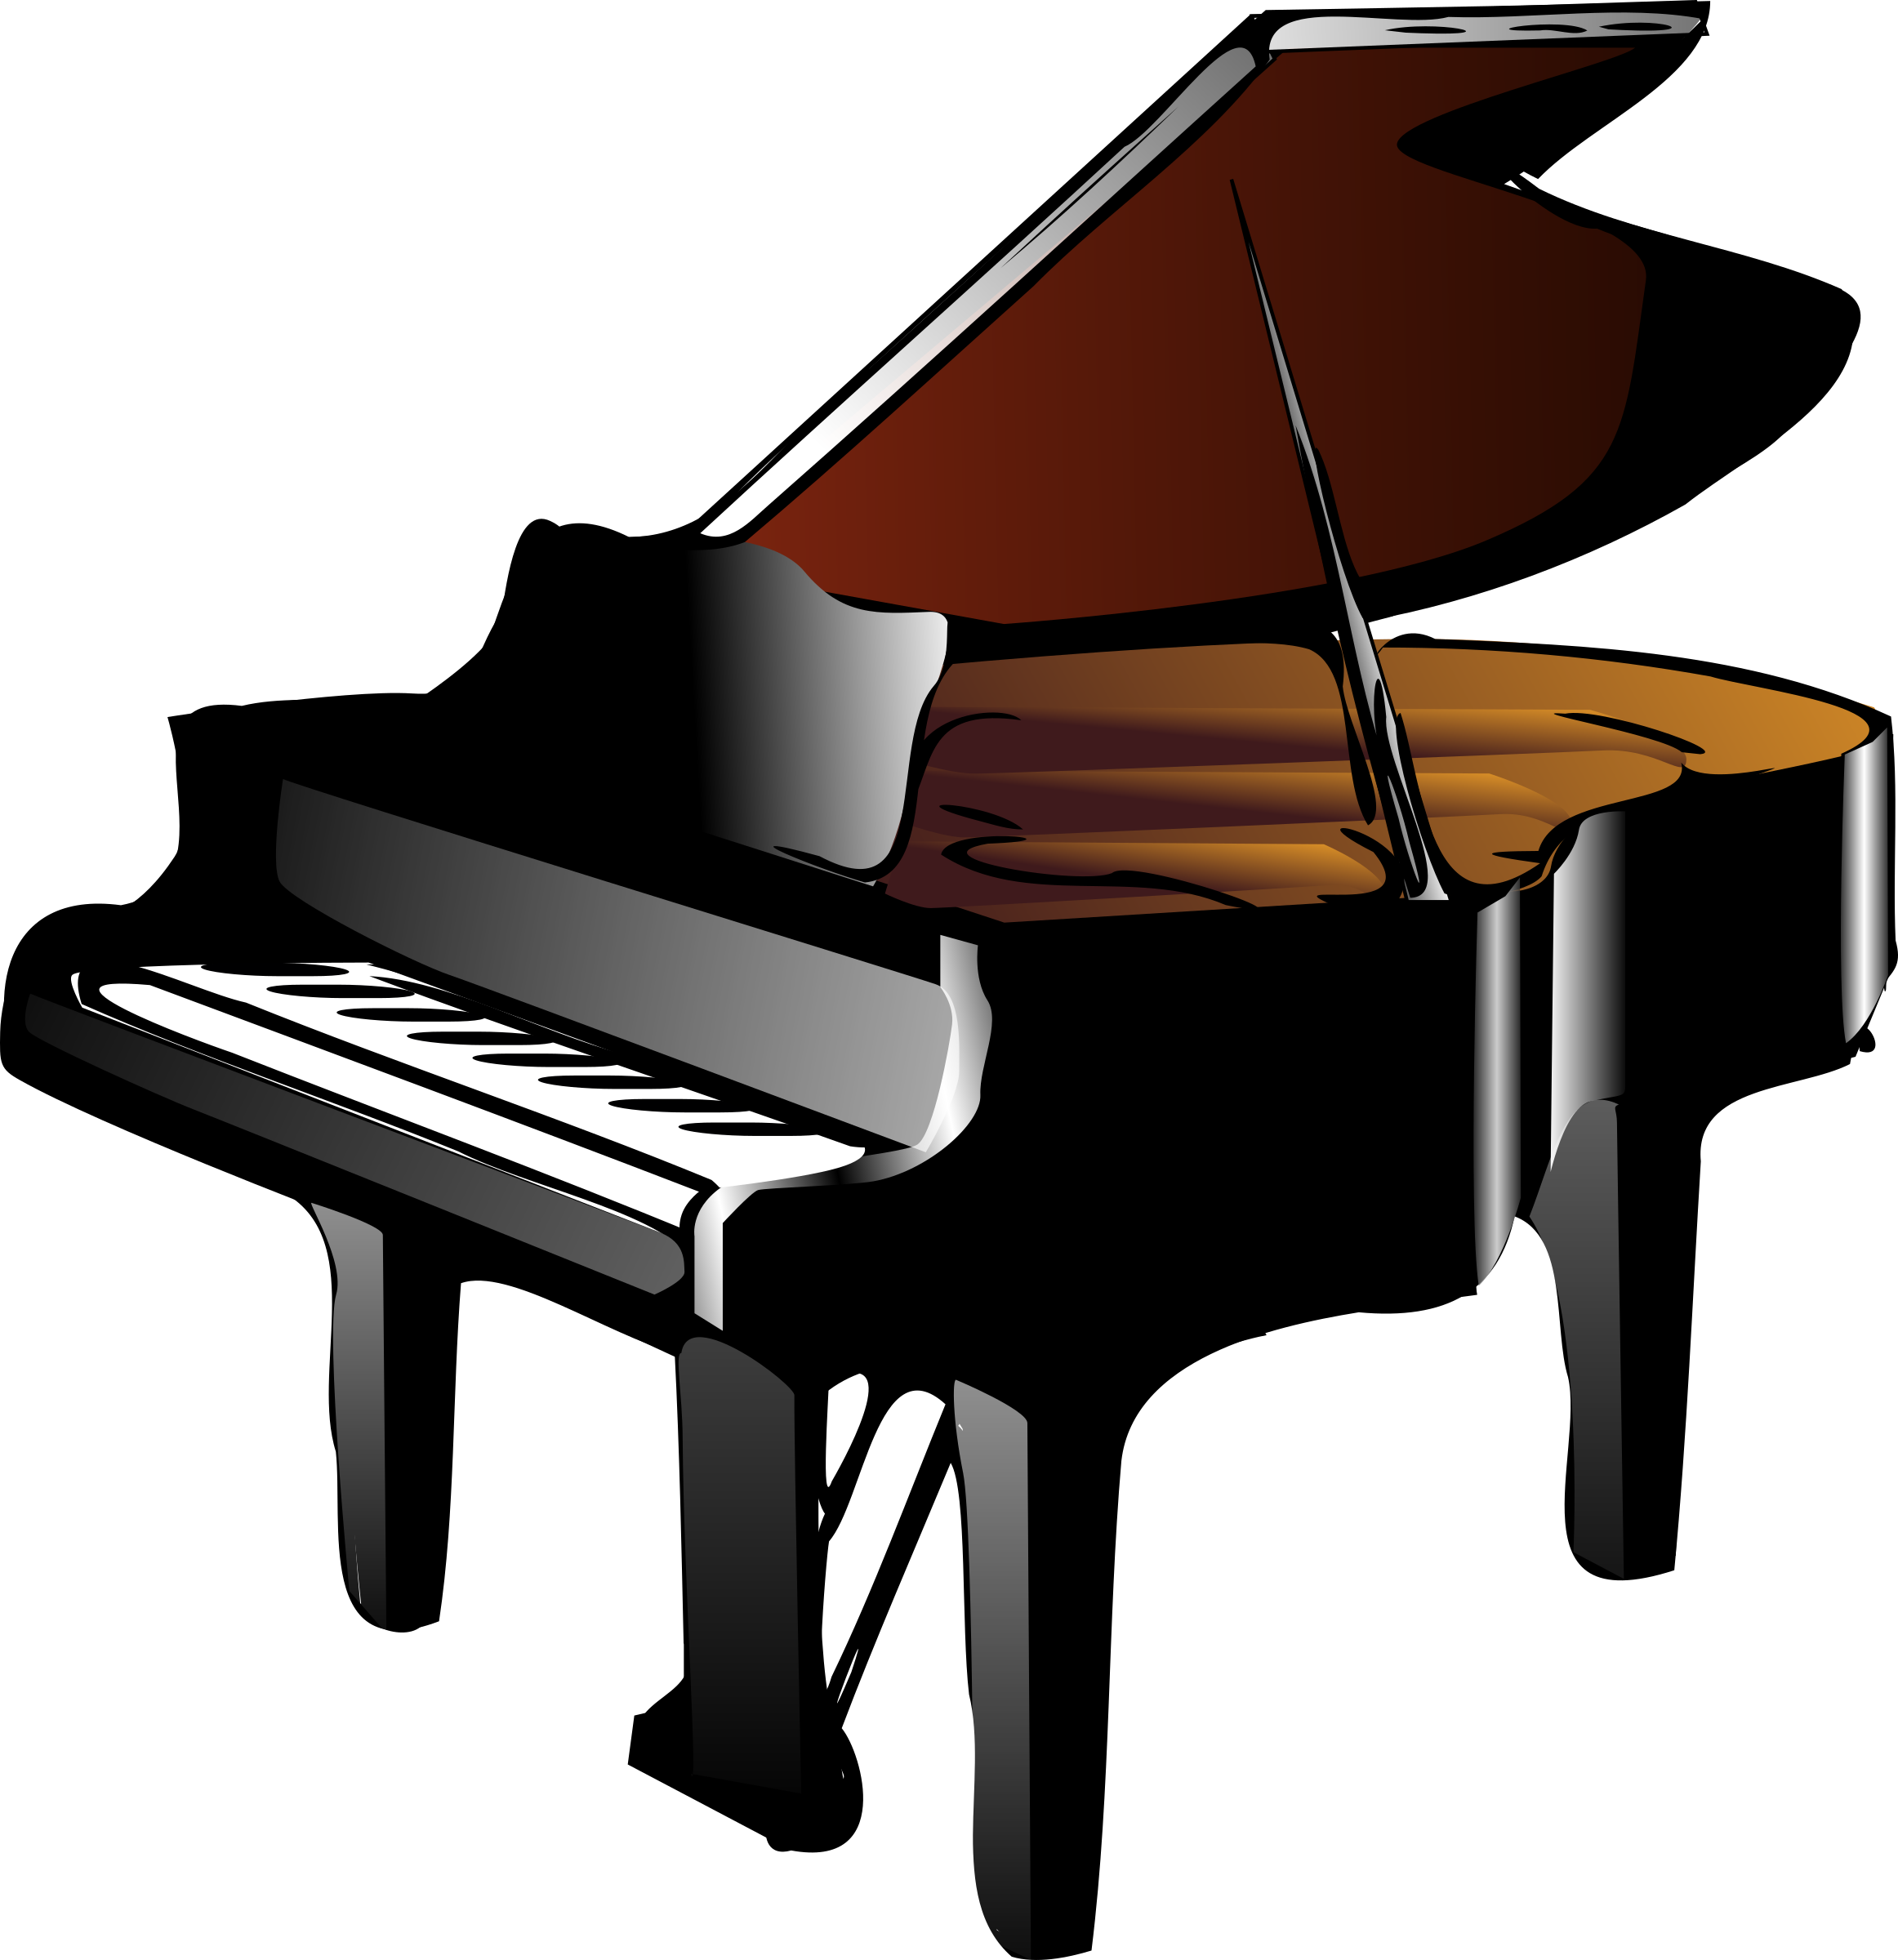 Piano - 3D Render PlusPng.com